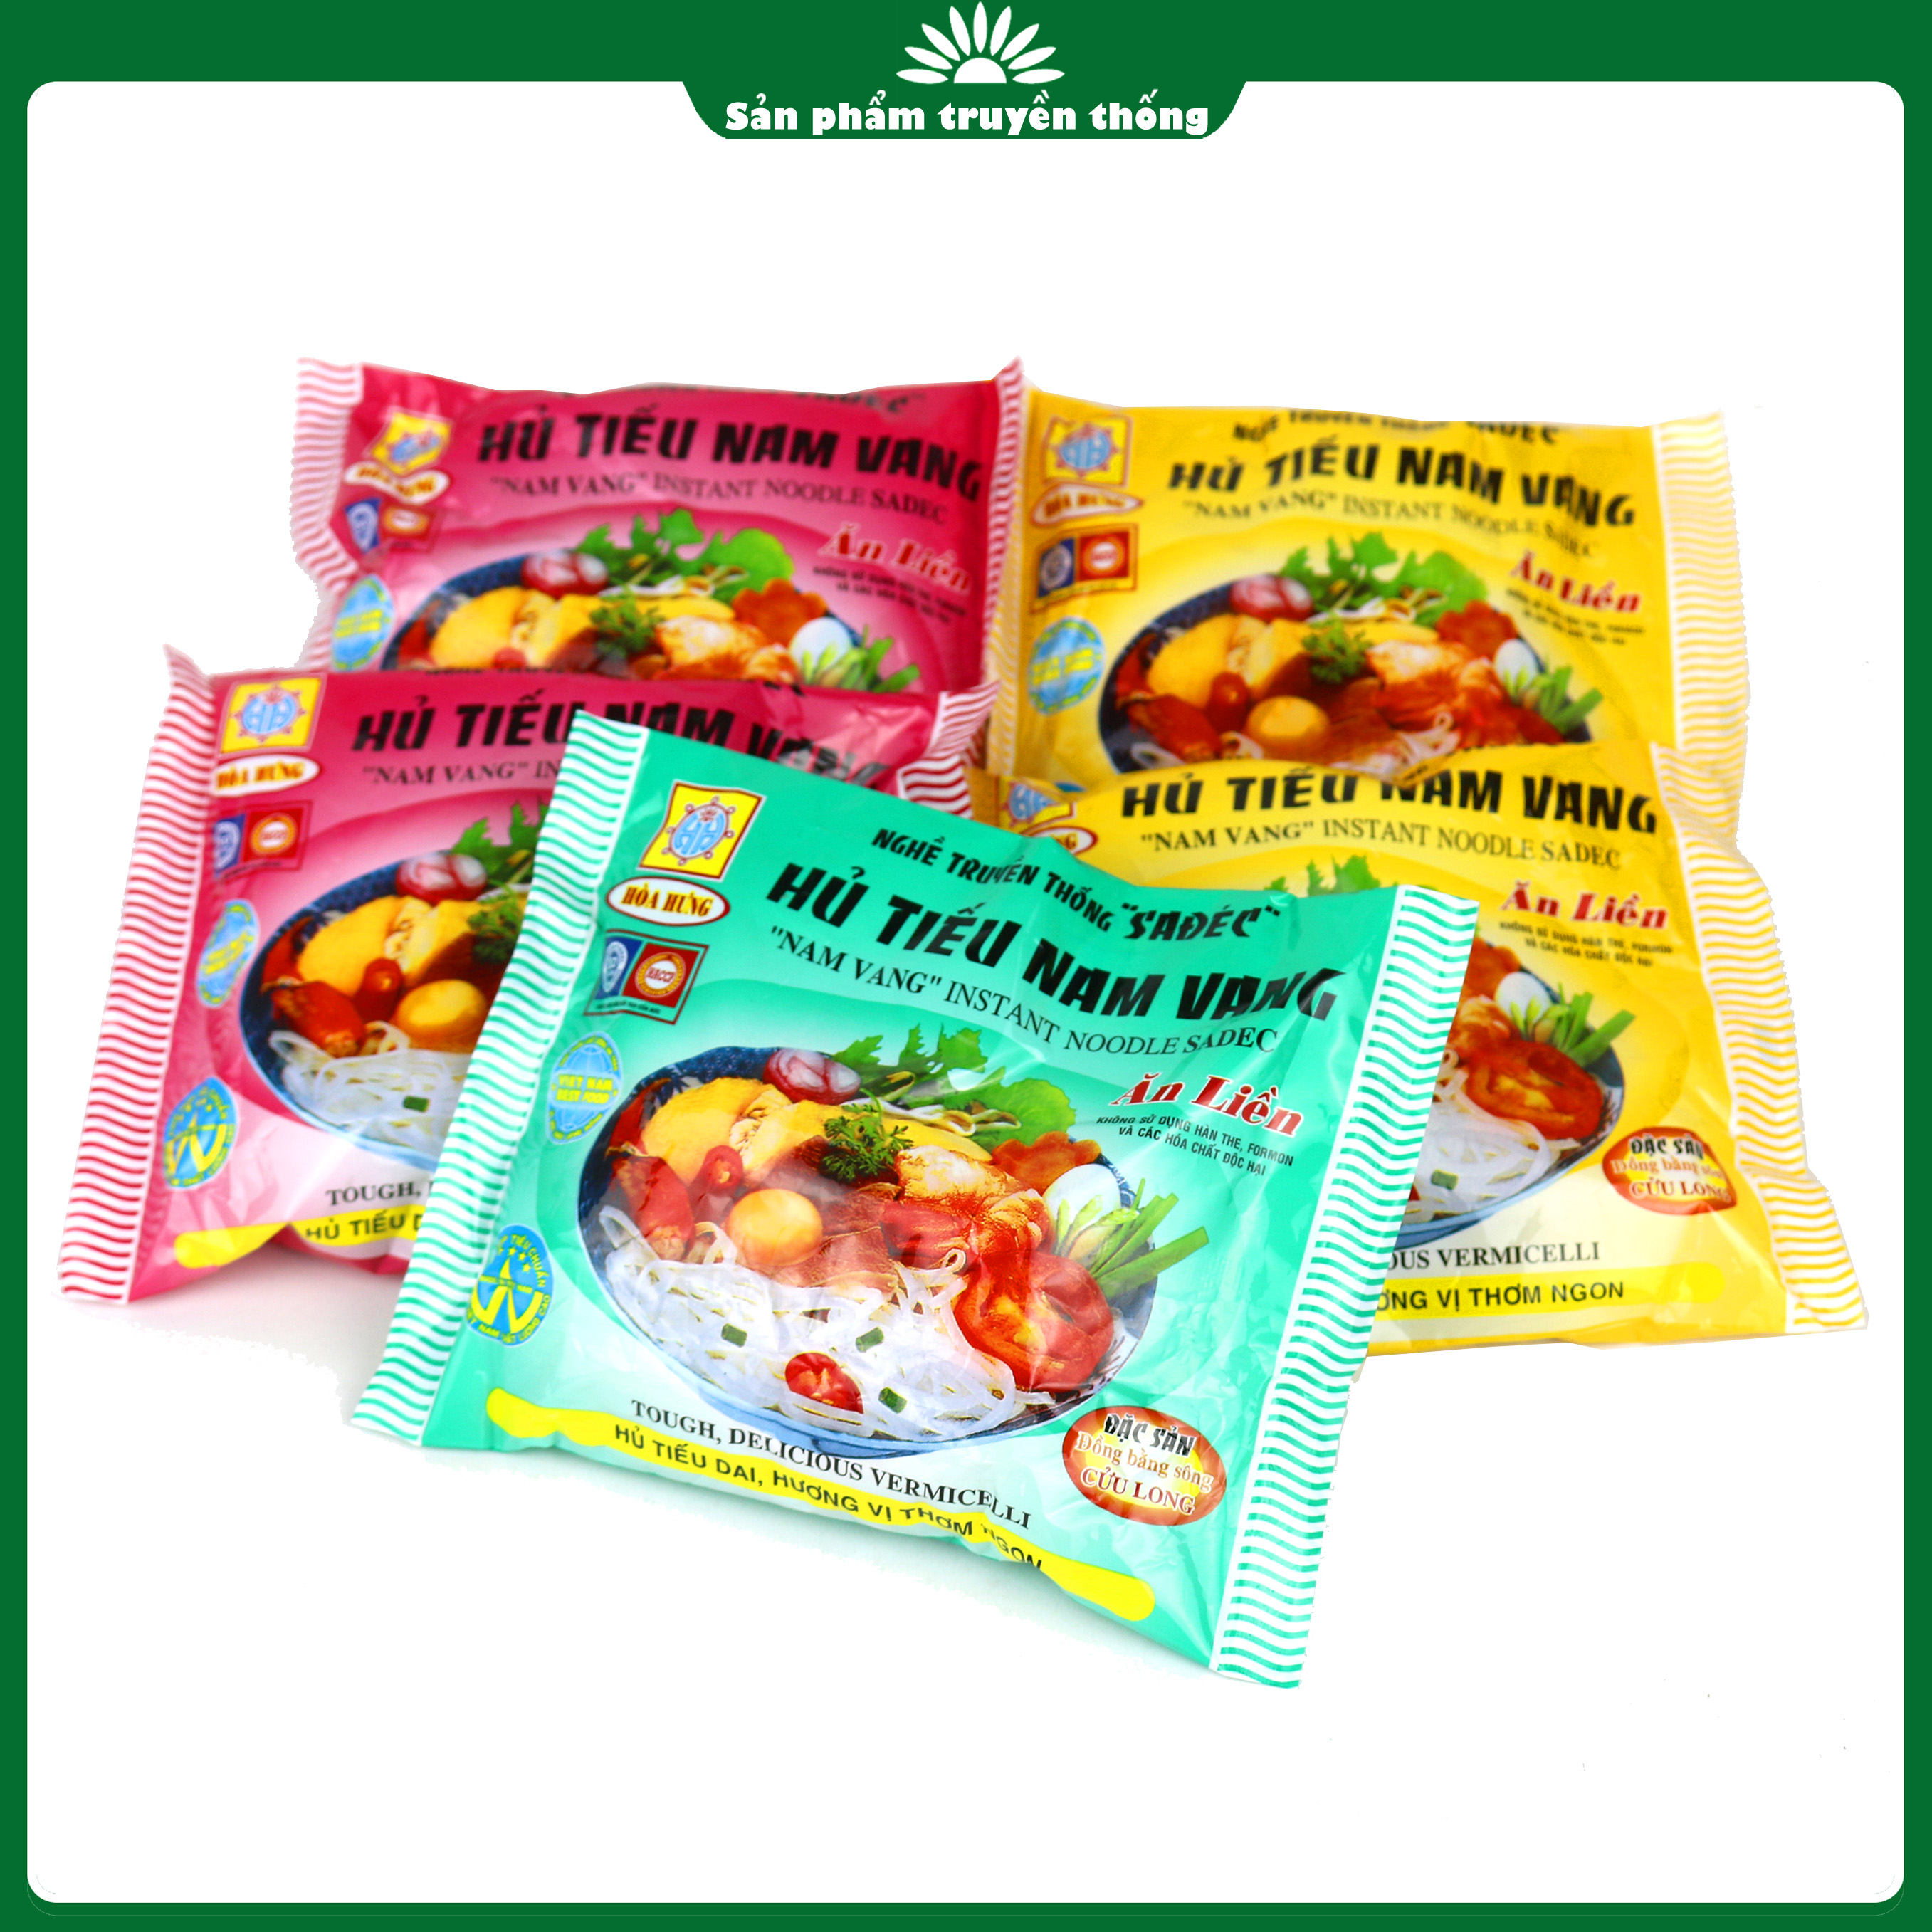 Hủ tiếu Nam Vang ăn liền Hòa Hưng-Thùng 30 gói- sản phẩm truyền thống Sa Đéc